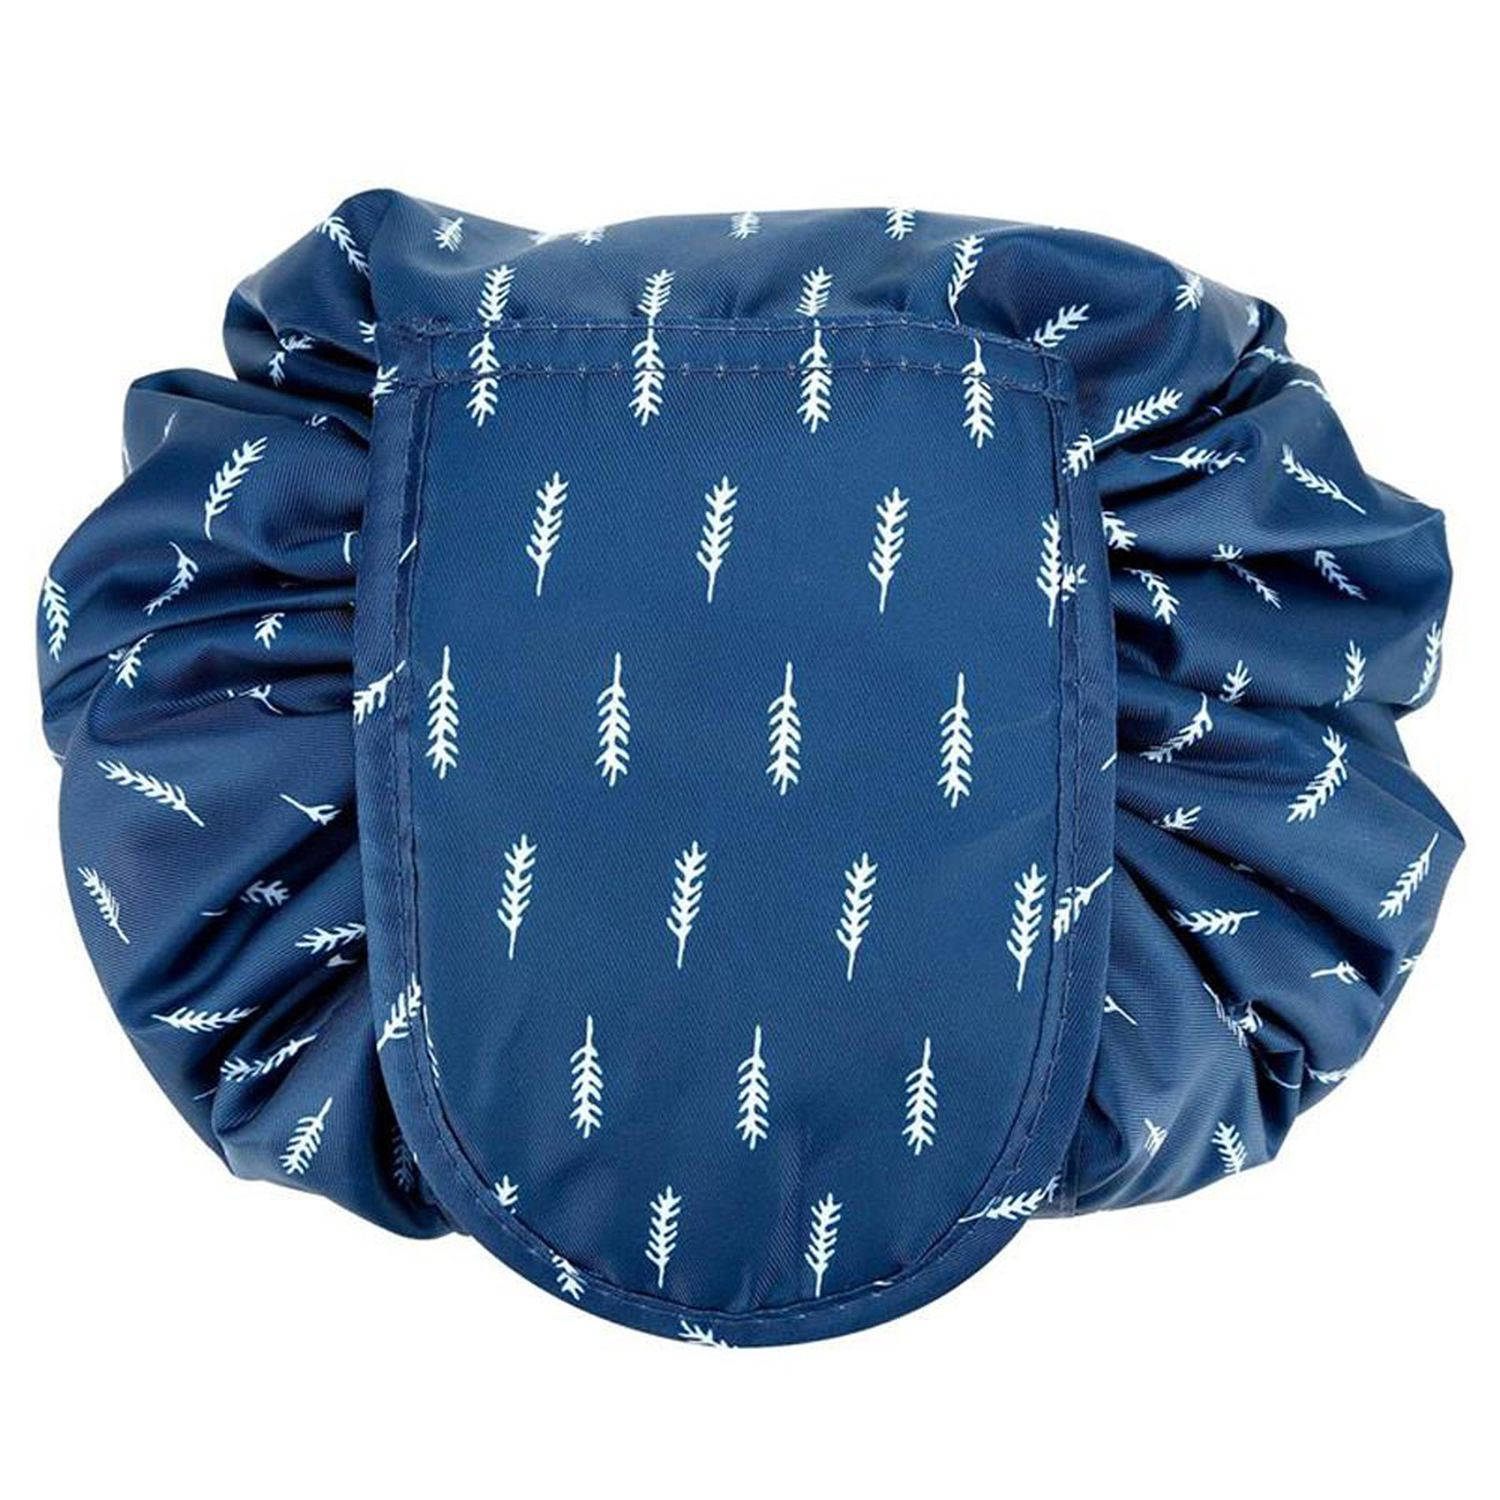 Intirilife Make-uptas in blauw en wit veren: ronde One Step toilettas met trekkoord om in elkaar te trekken, met 2 binnenvakken met ritssluiting, ideaal voor op reis, voor het opbe